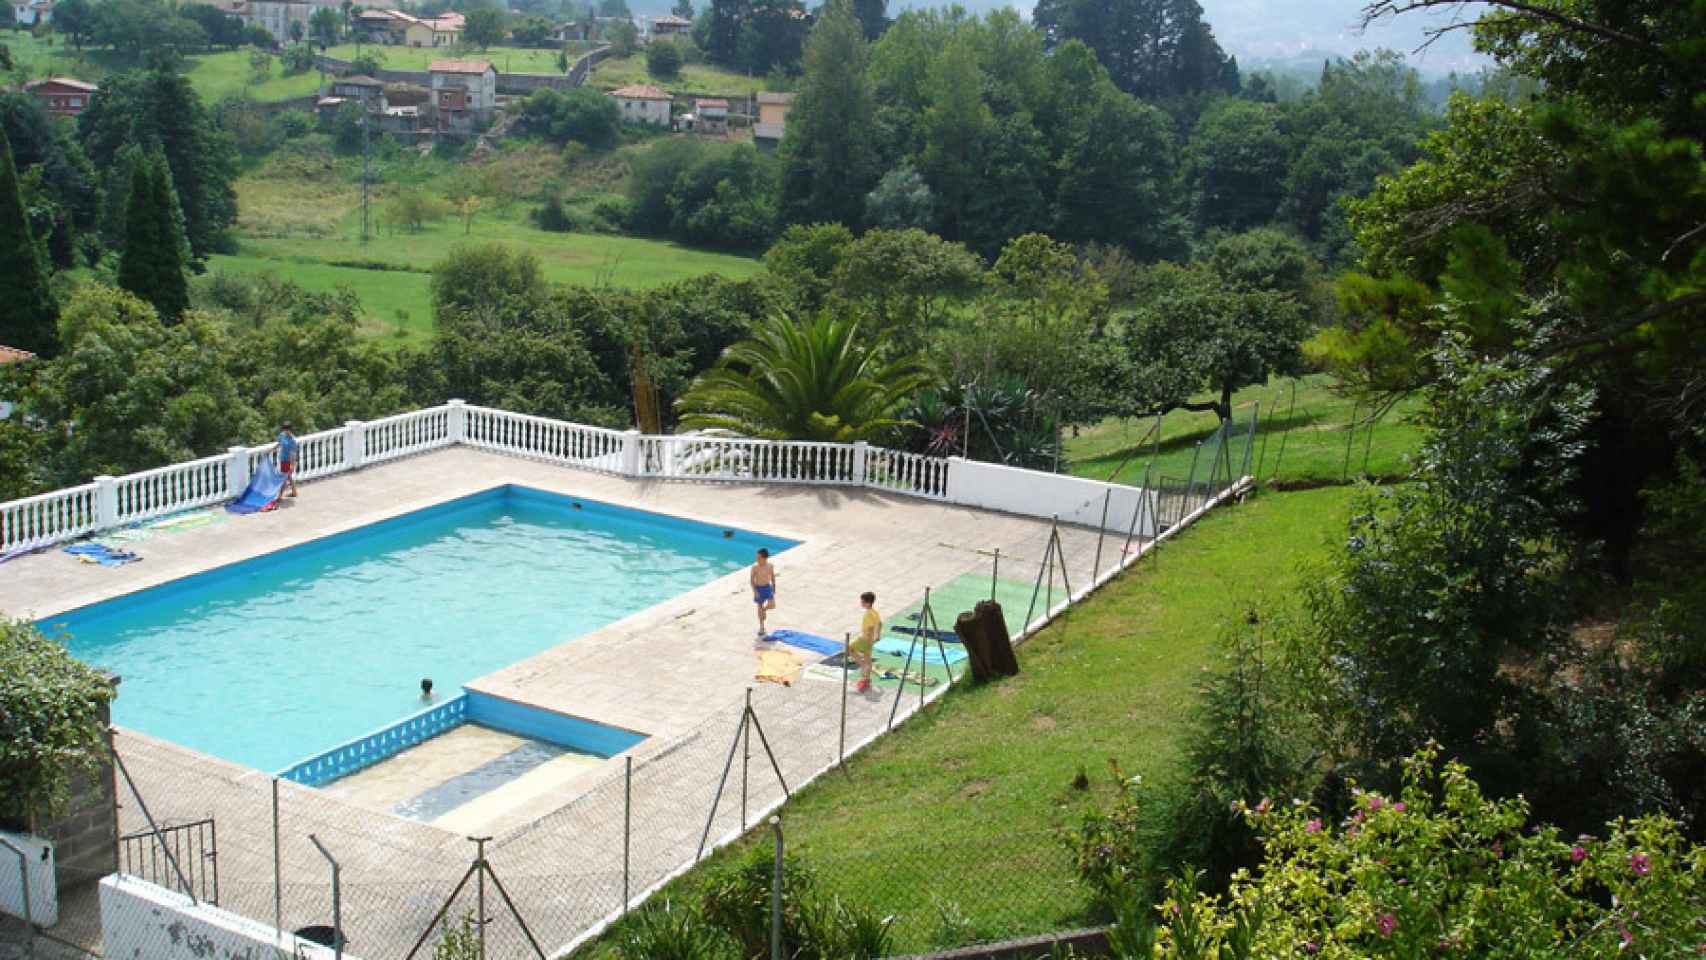 La piscina de la granja Palacio de la Bouza en la que falleció el niños de cinco años.